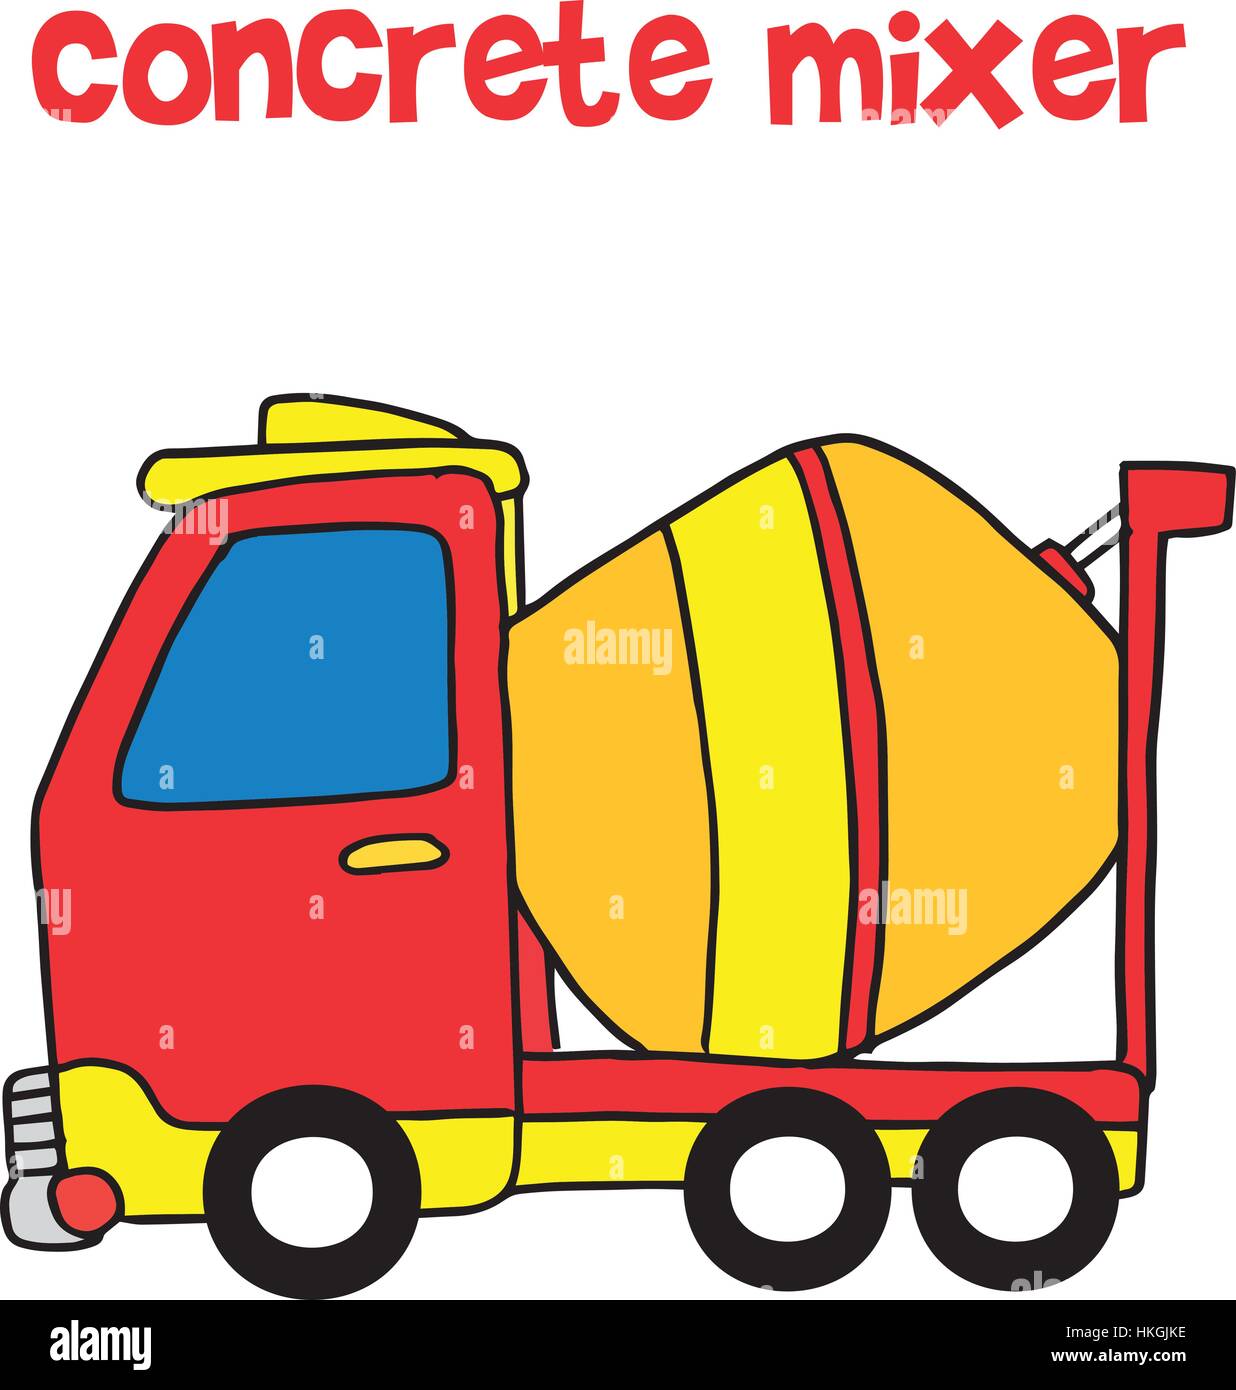 Red concrete mixer cartoon vector Stock Vector